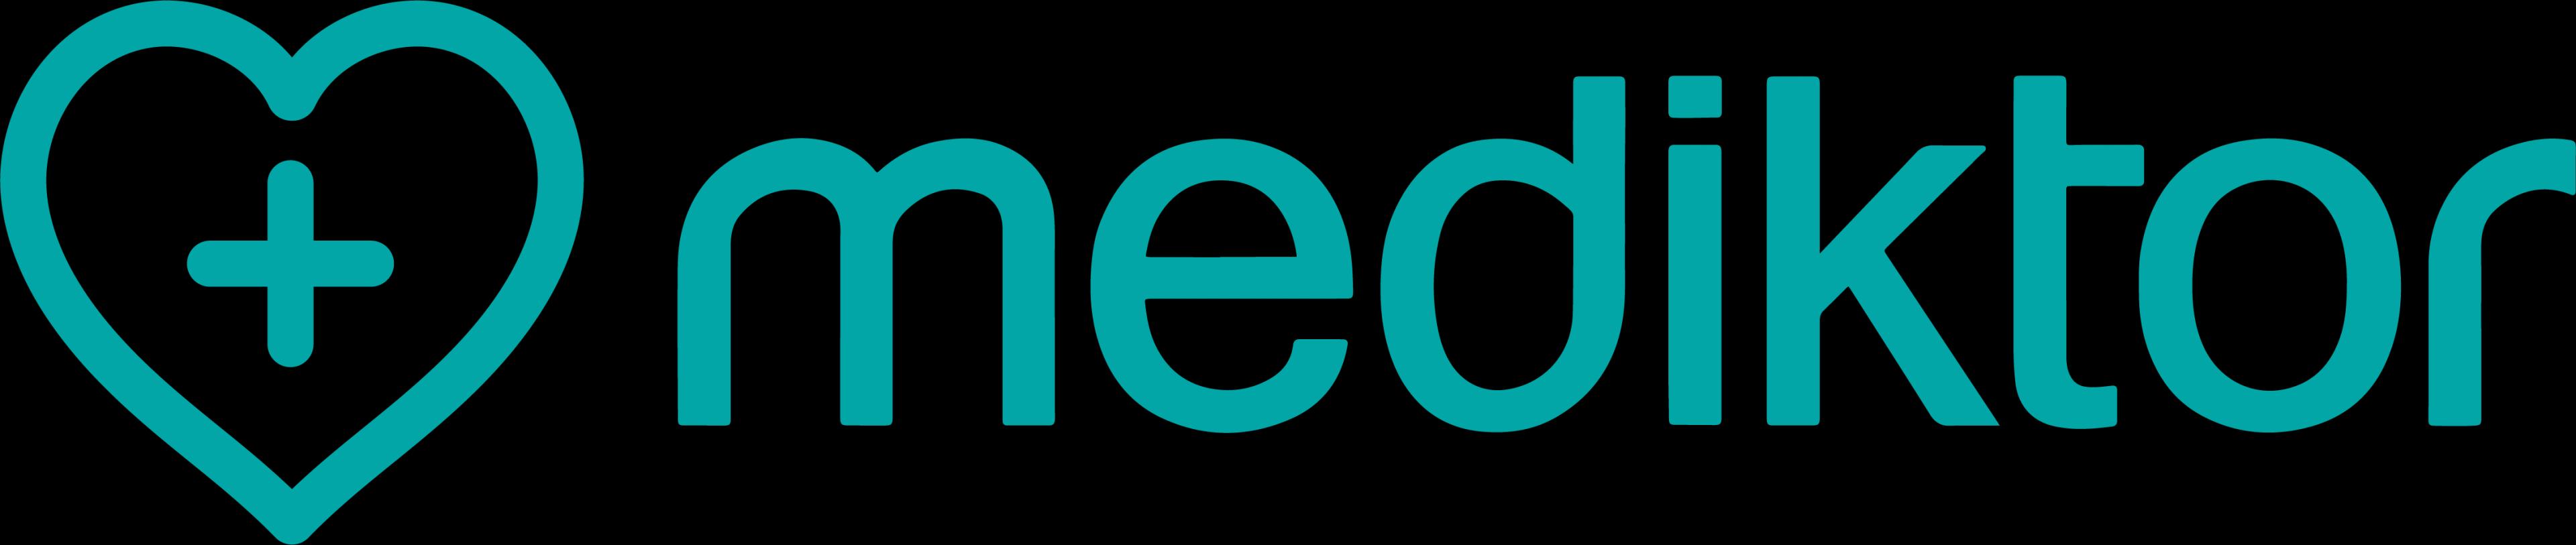 Mediktor_logo